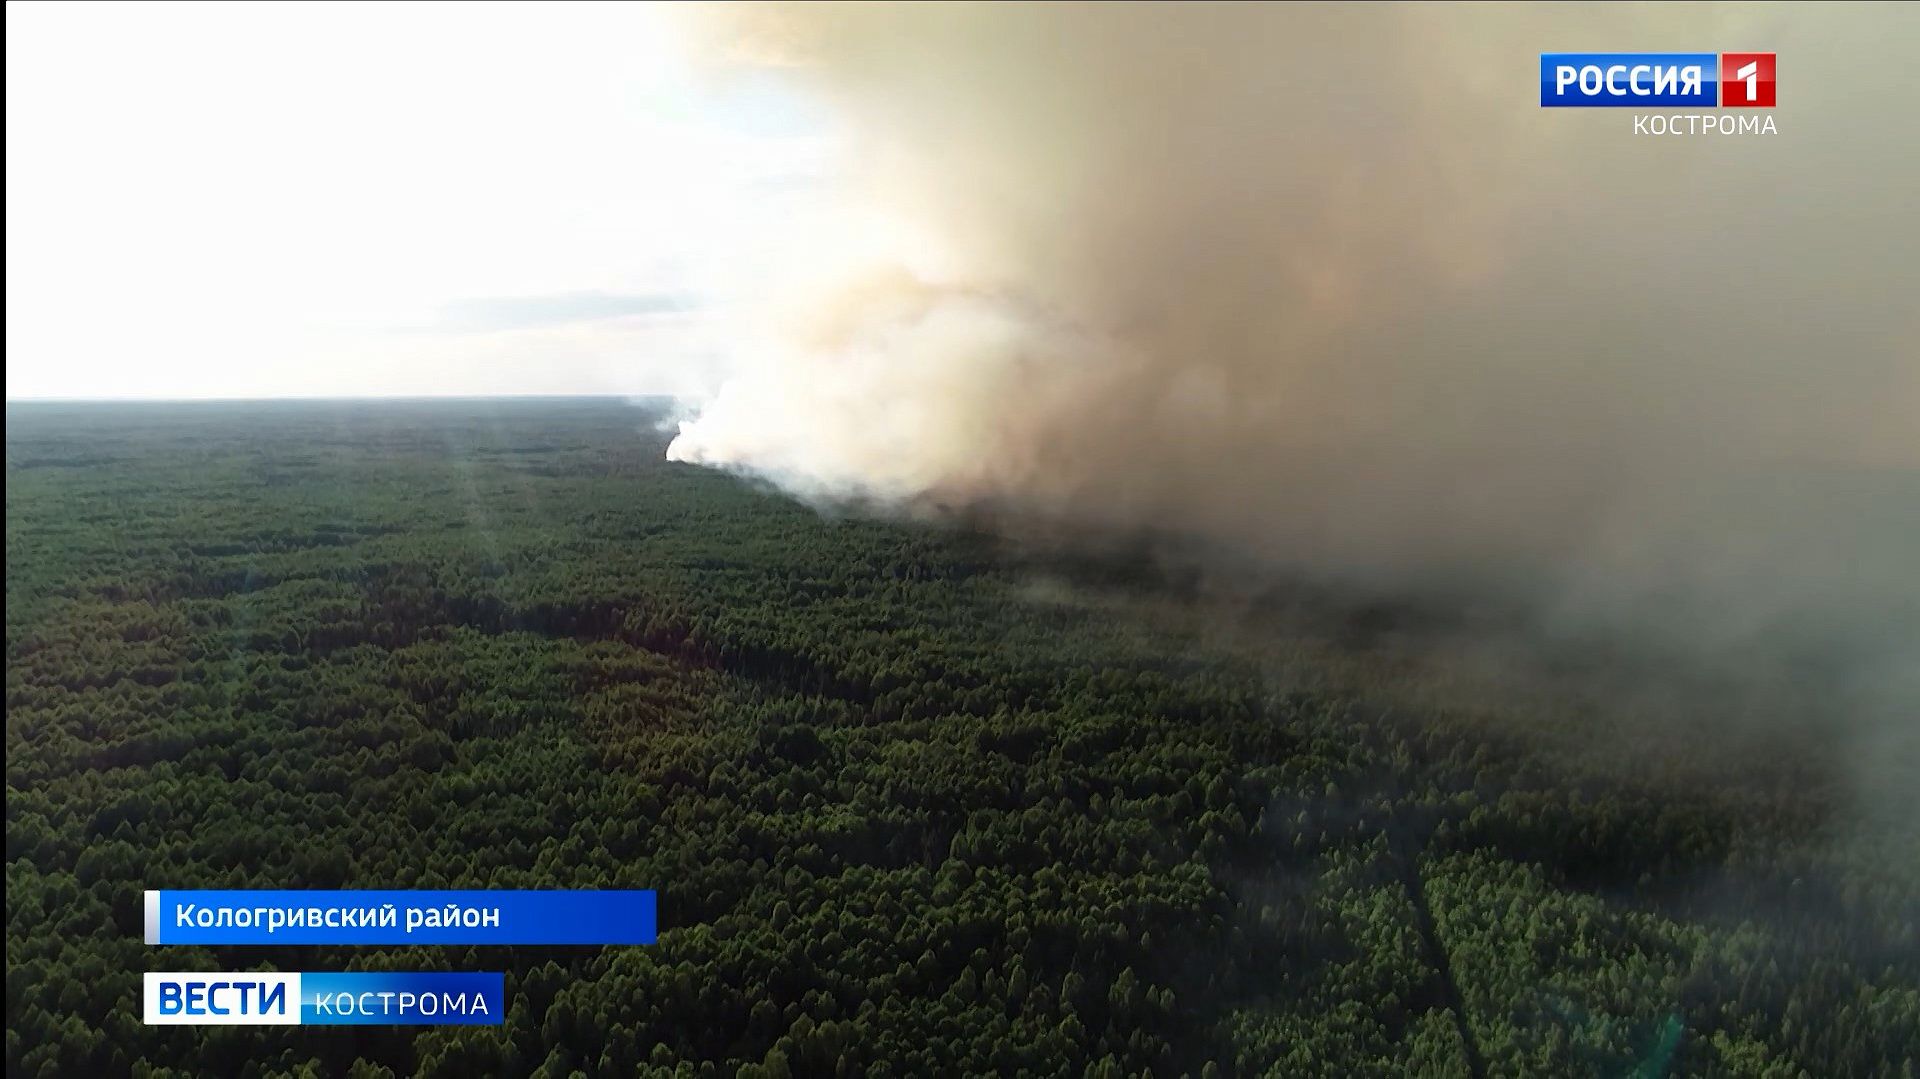 Риски возникновения пожаров в костромских лесах должны снизиться в ближайшие сутки